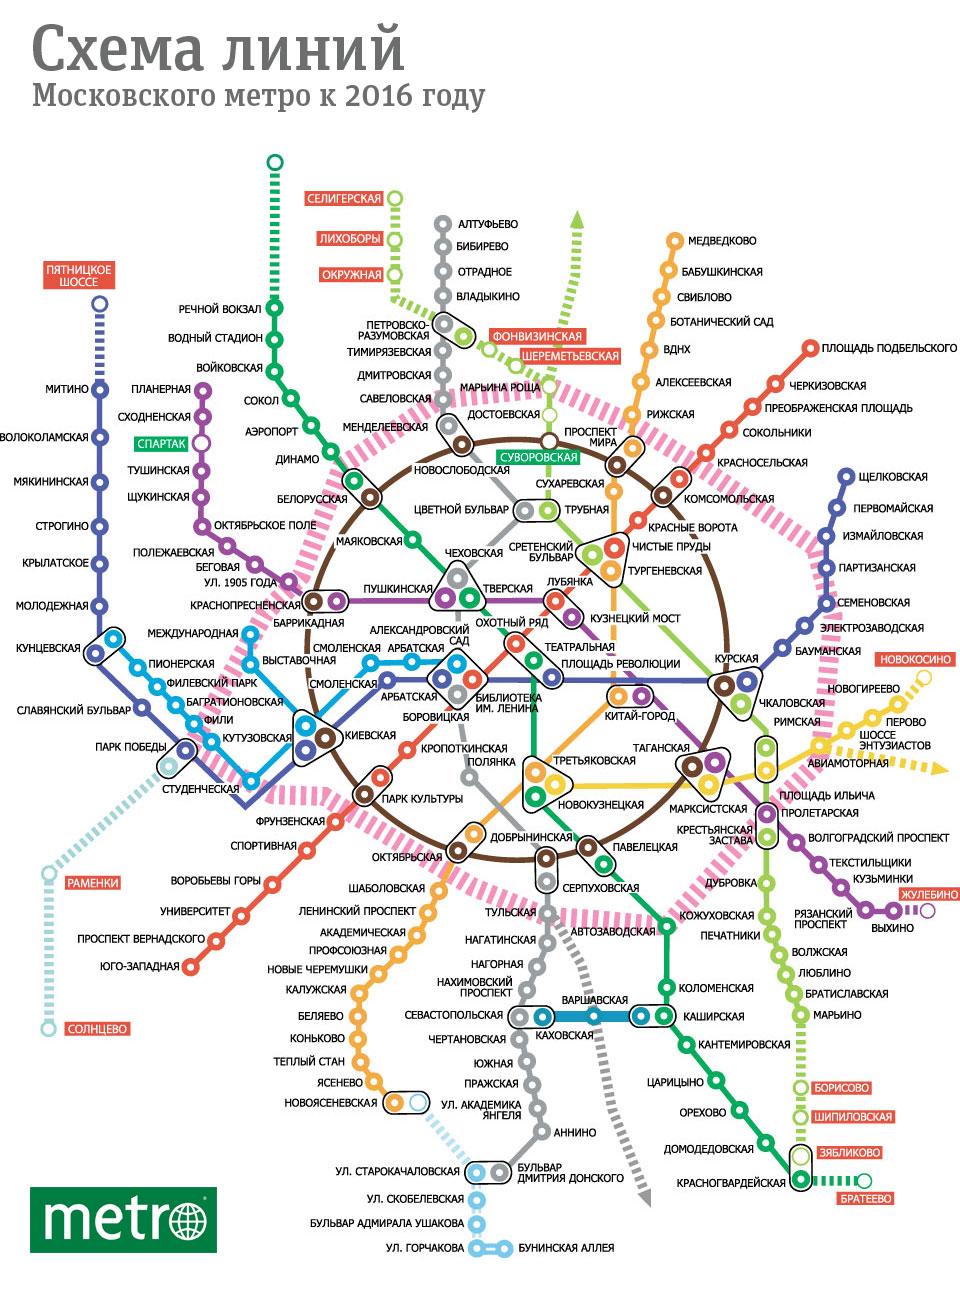 A quoi ressemblera le Metro de Moscou dans 5 ans?